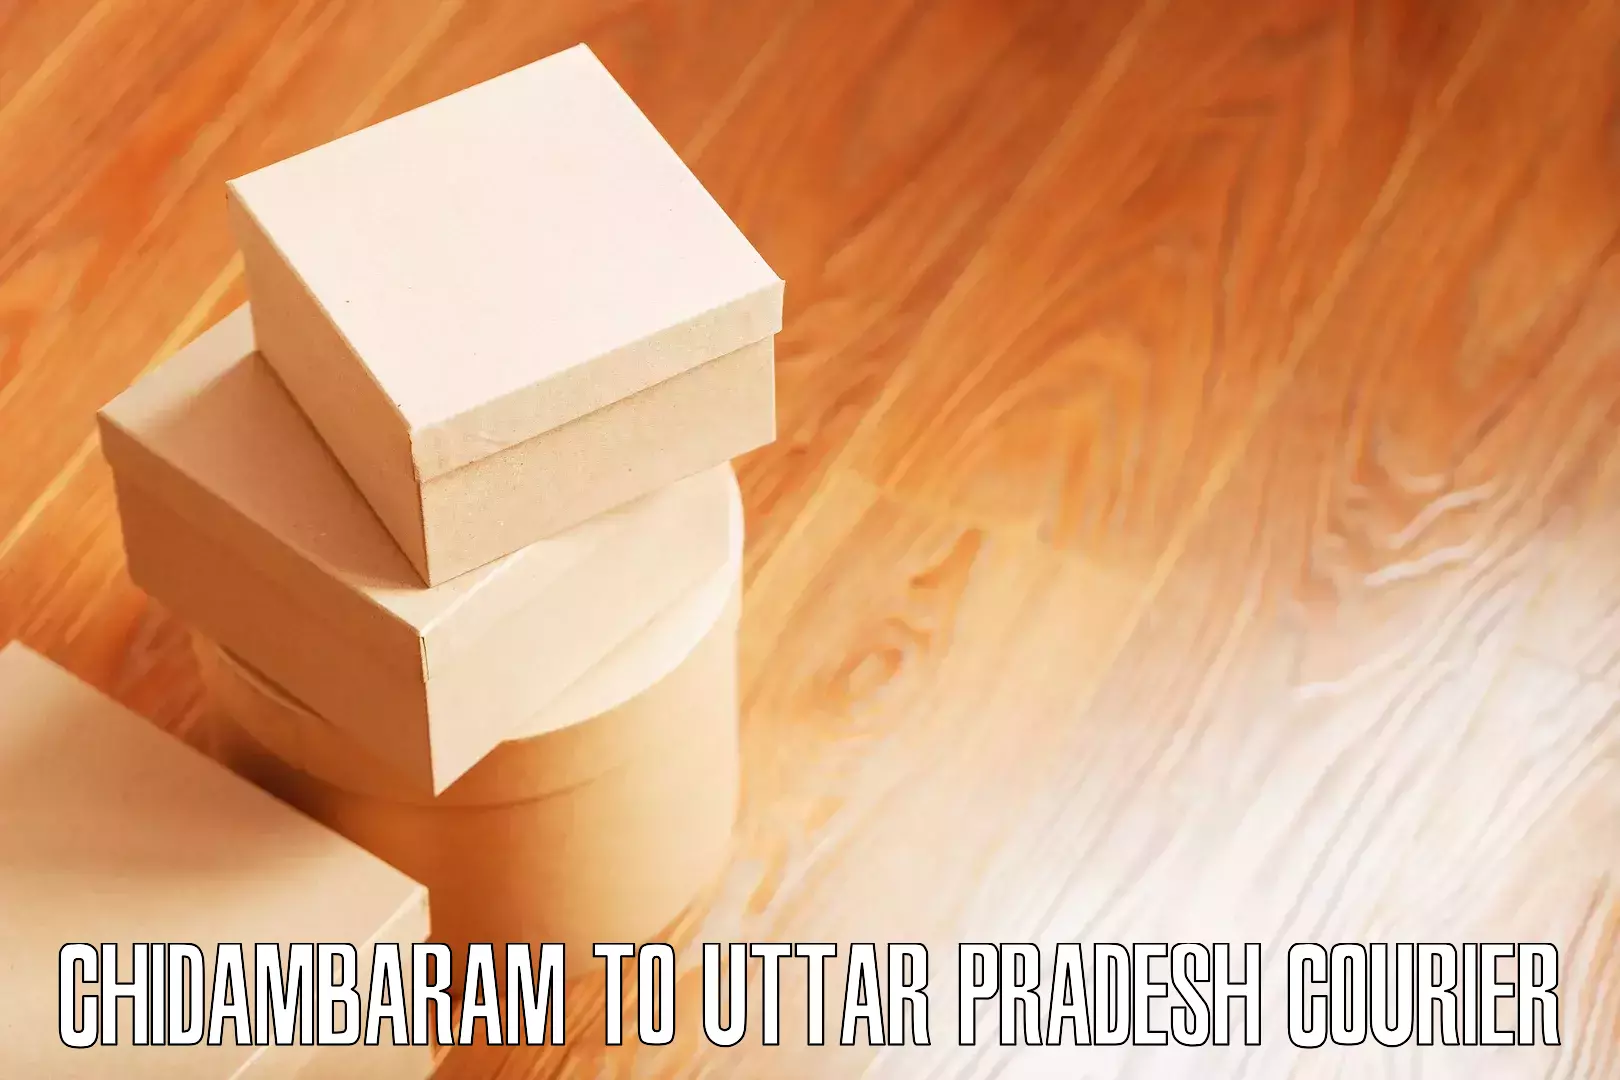 Full-service movers Chidambaram to Uttar Pradesh